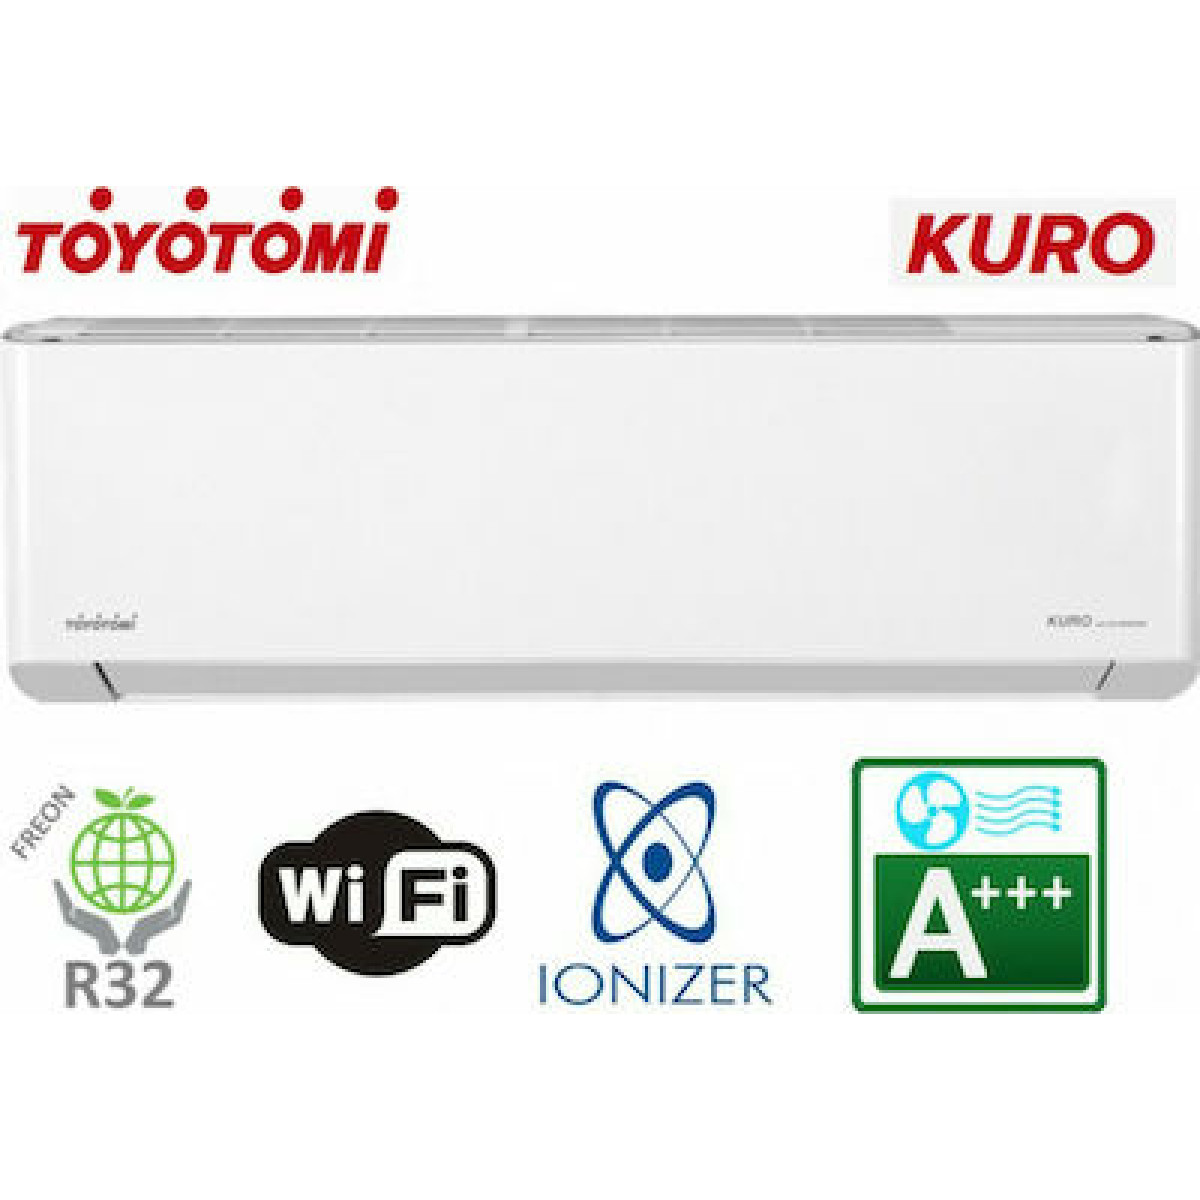 Κλιματιστικό Inverter Toyotomi Kuro TKN/TKG-656R32 18000 BTU με Ιονιστή και WiFi Κλιματιστικά Inverter